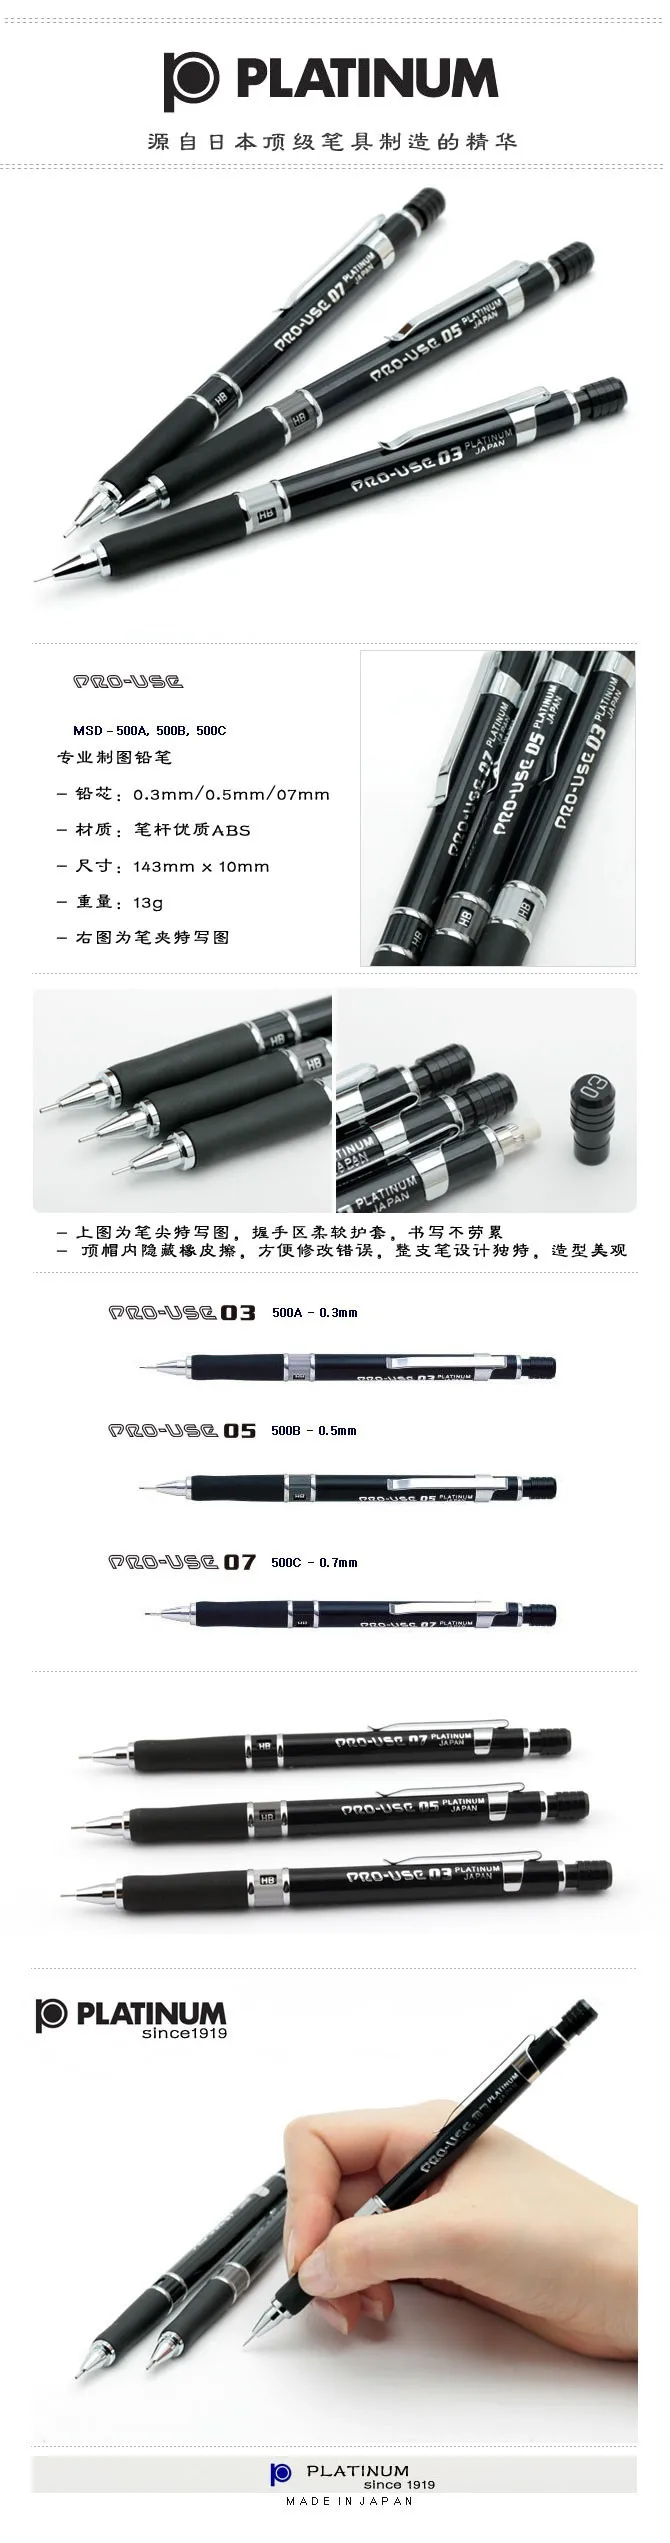 Япония Платиновый MSD-500 механический карандаш 0,3/0,5/0,7 мм механический карандаш Профессиональный Графика автоматического карандаша